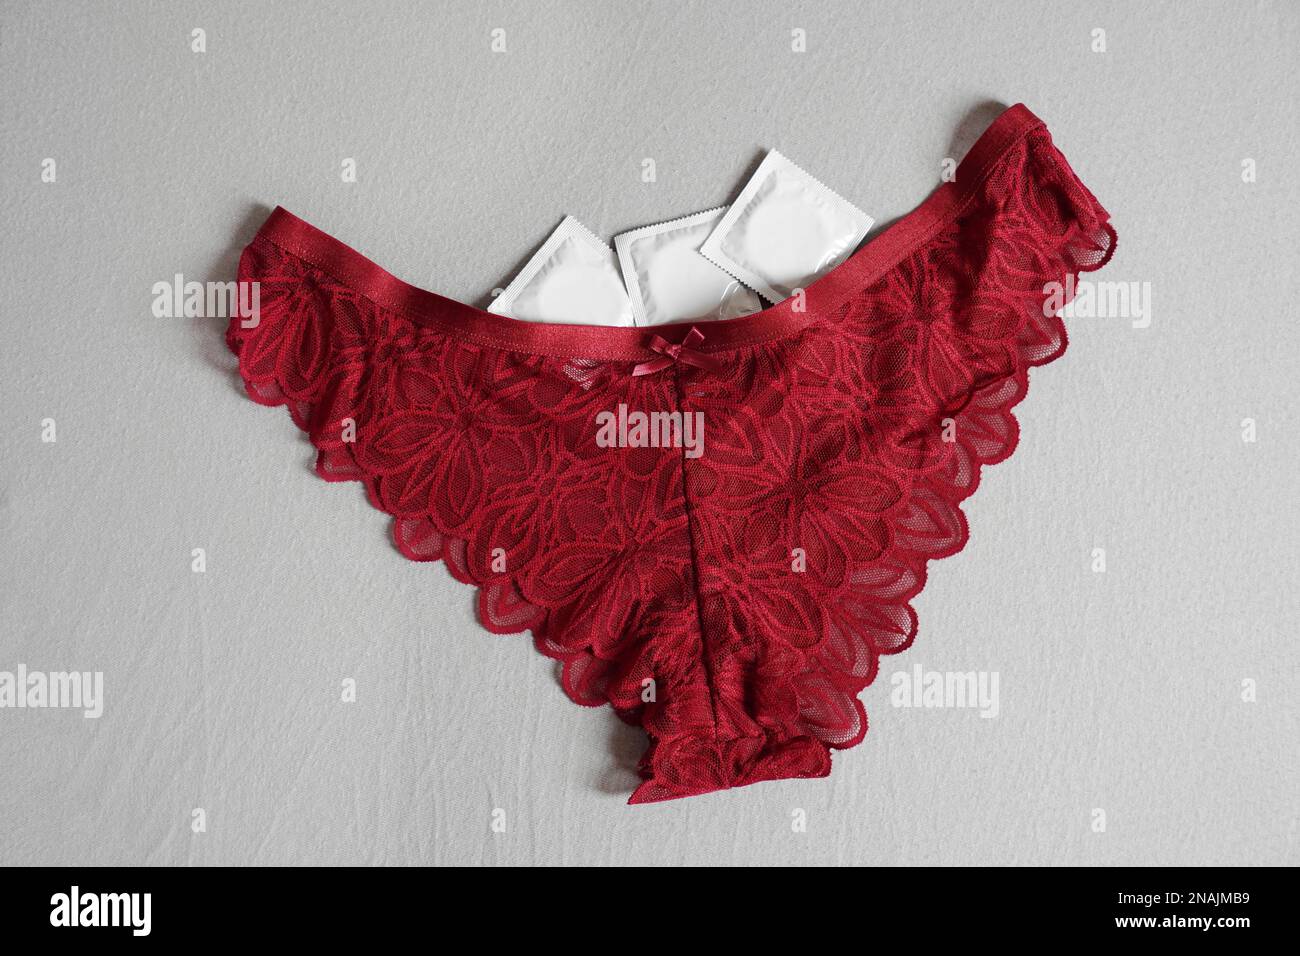 Rote Damenhöschen mit Kondomen - Sex und Empfängnisverhütung Konzept Stockfoto